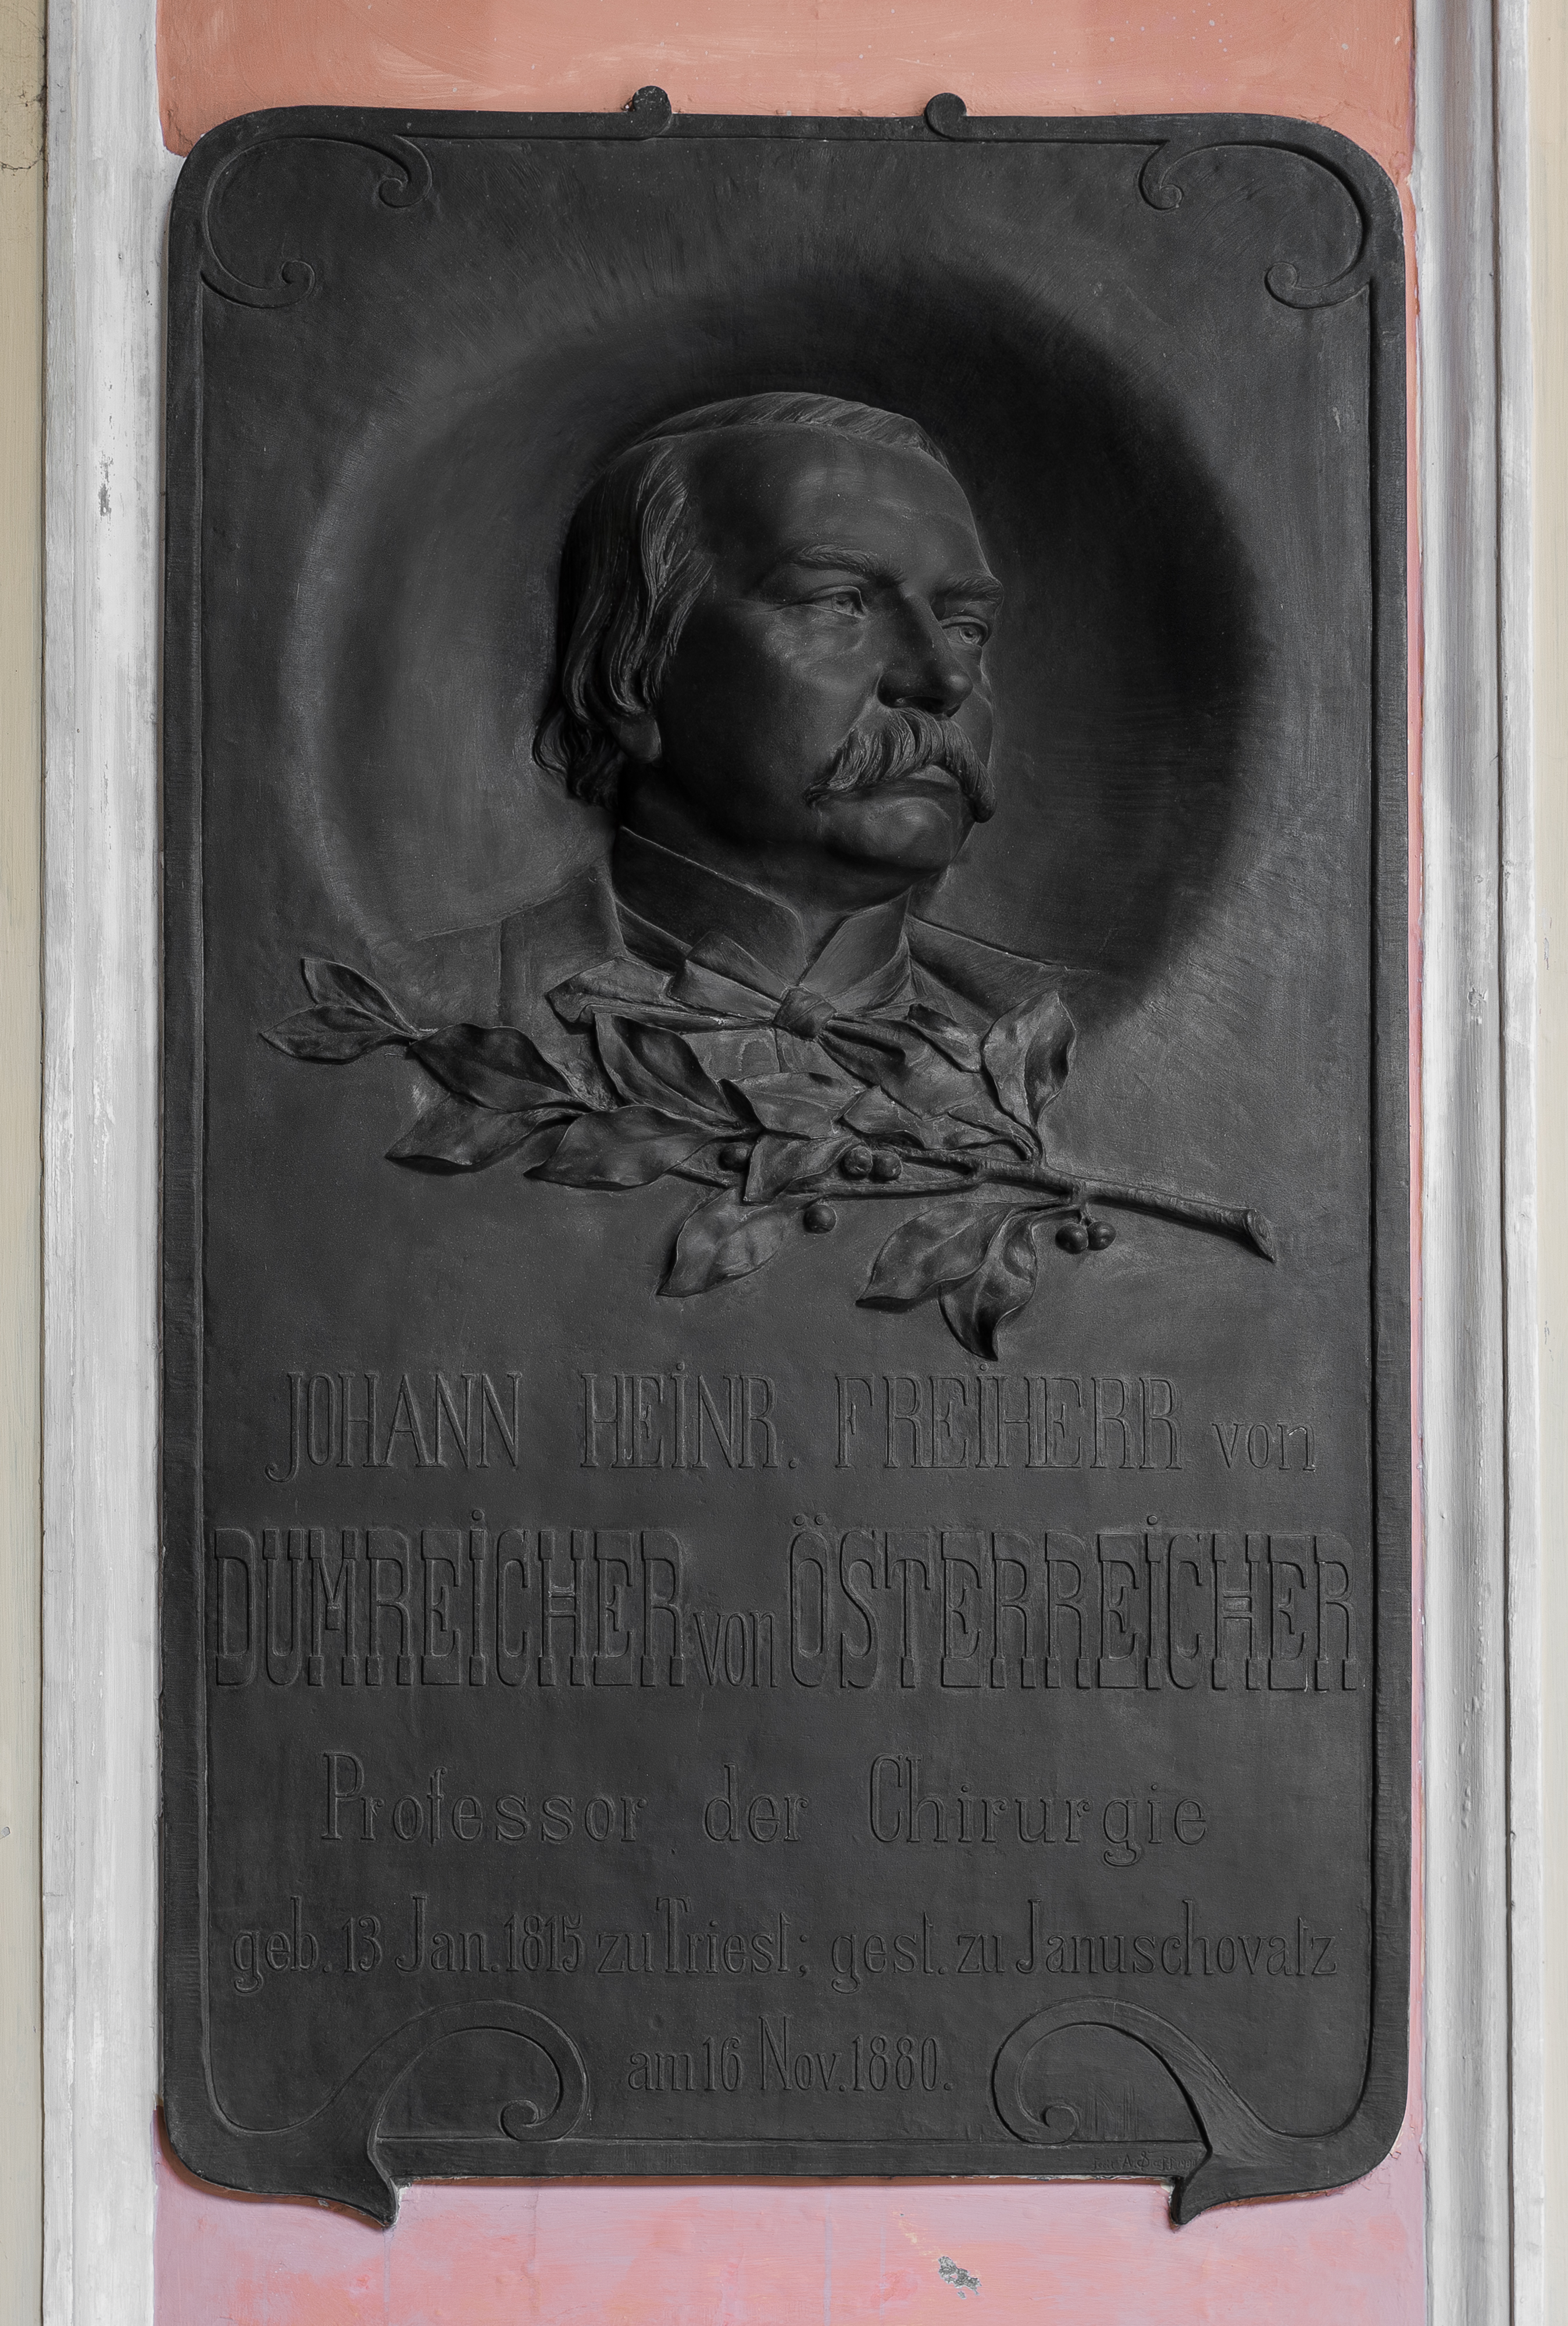 Johann Heinrich Dumreicher (1815-1880), Nr. 88 basrelief (bronce) in the Arkadenhof of the University of Vienna 1999